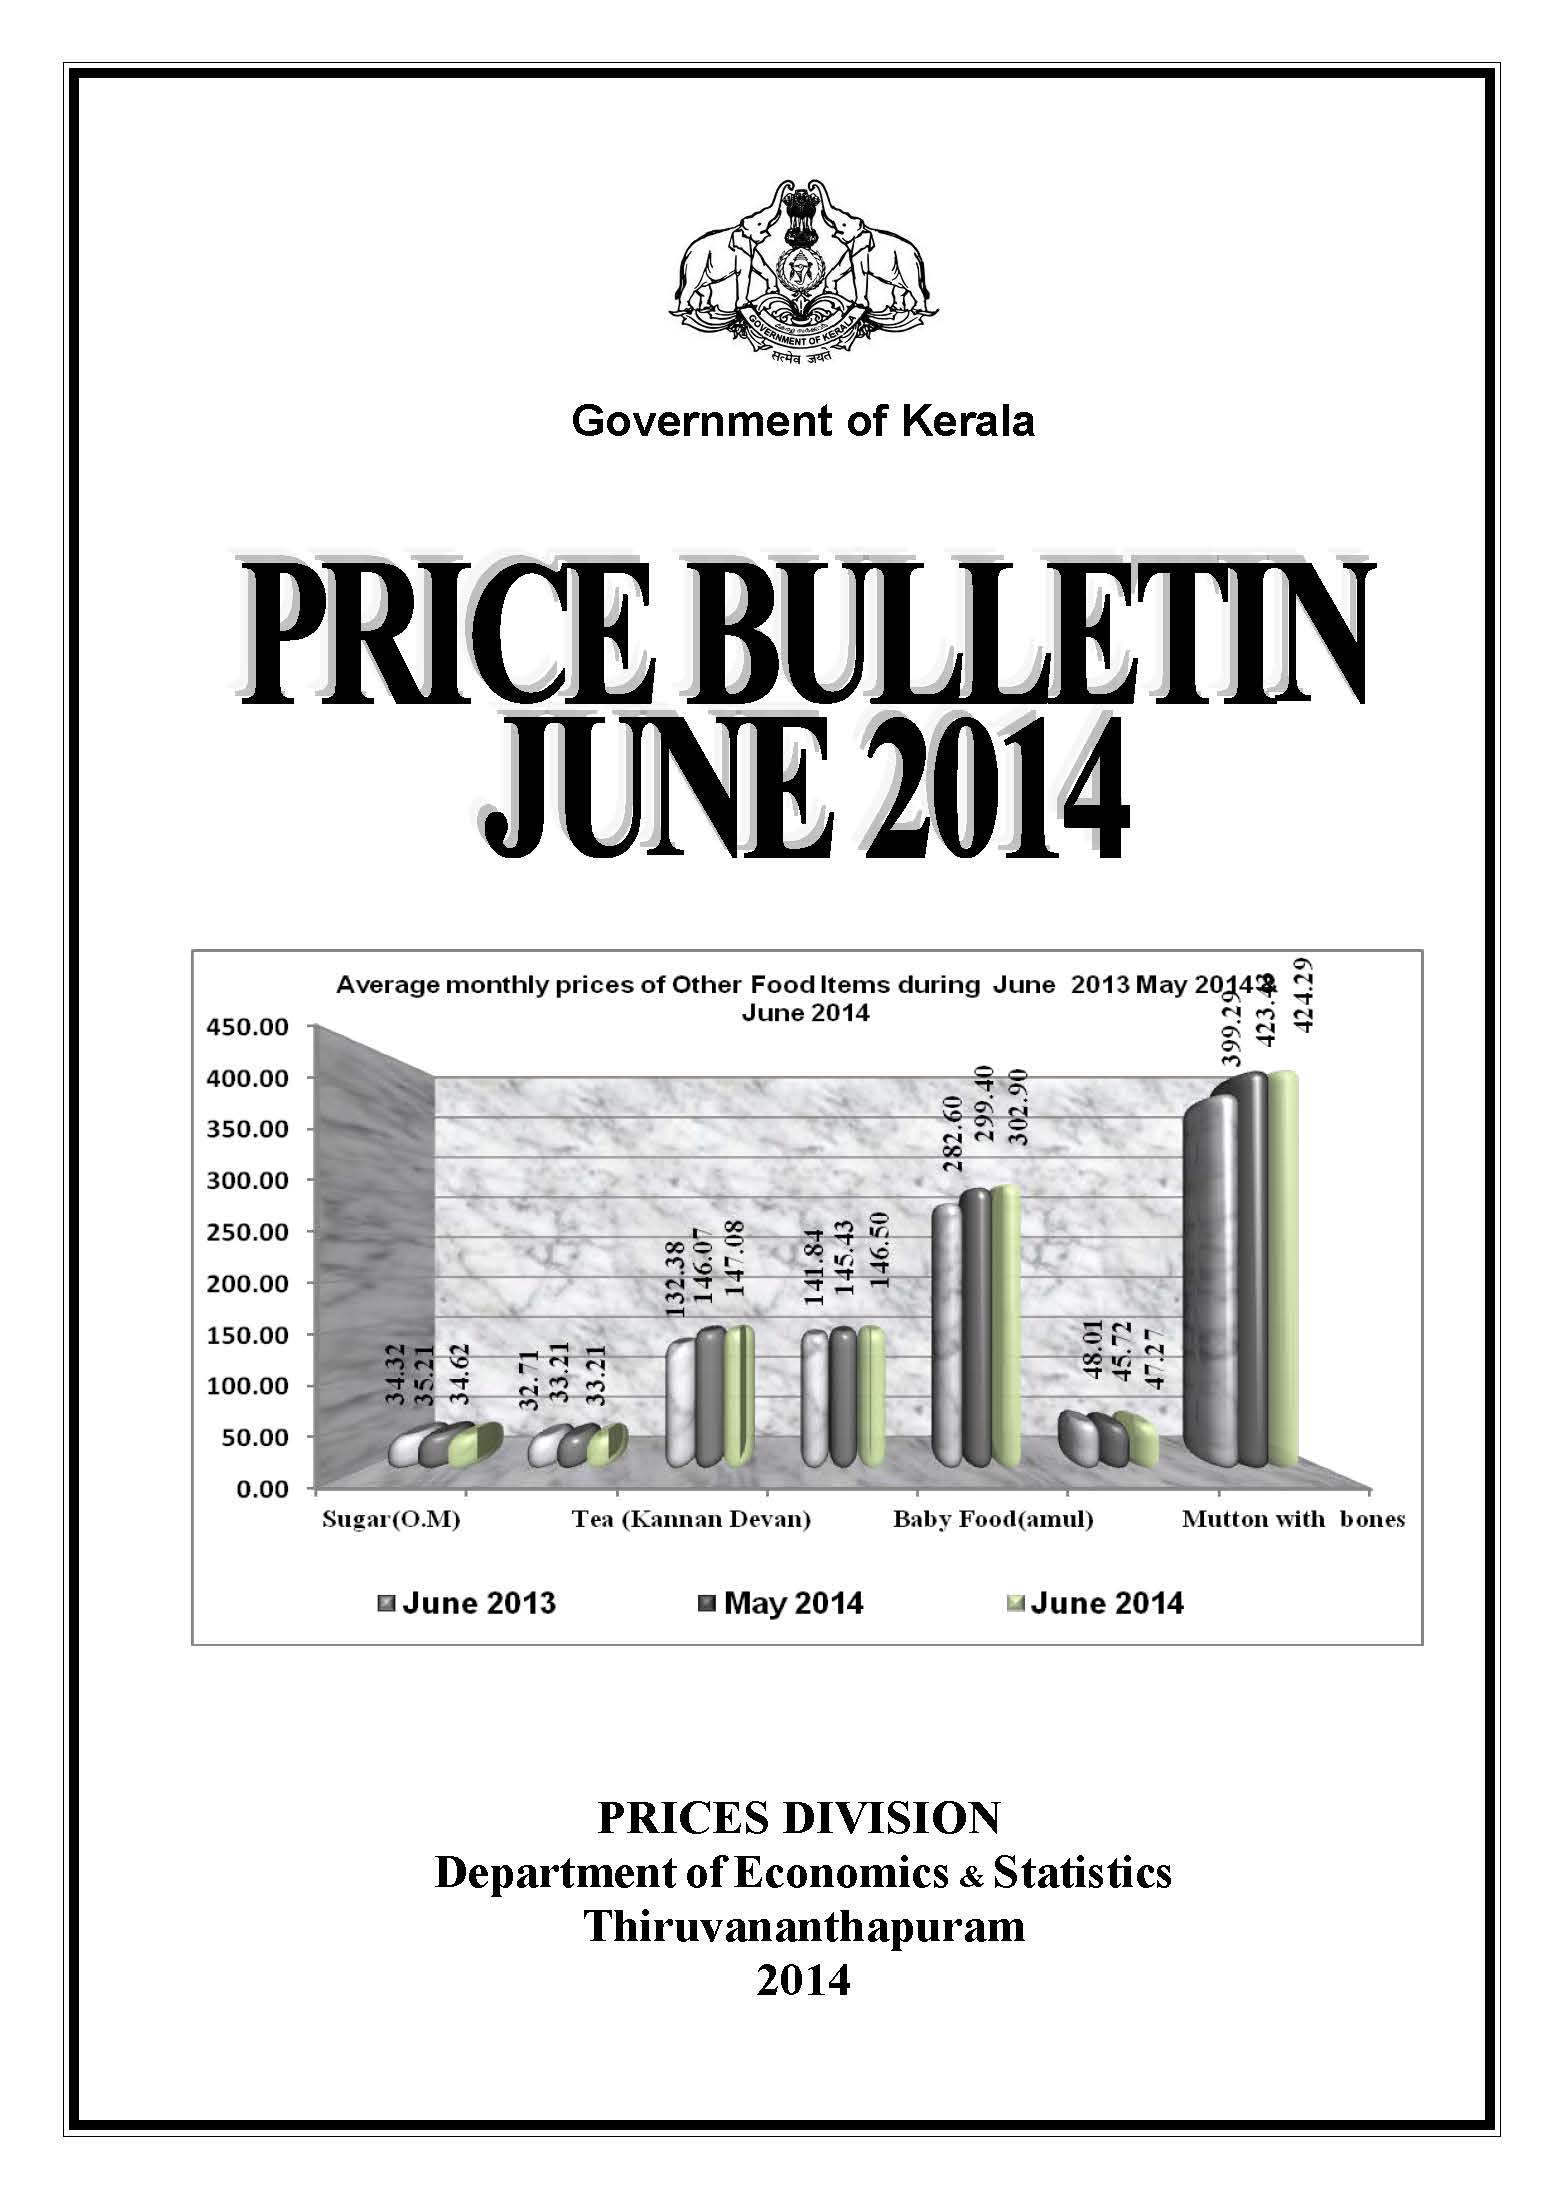 Price Bulletin June 2014